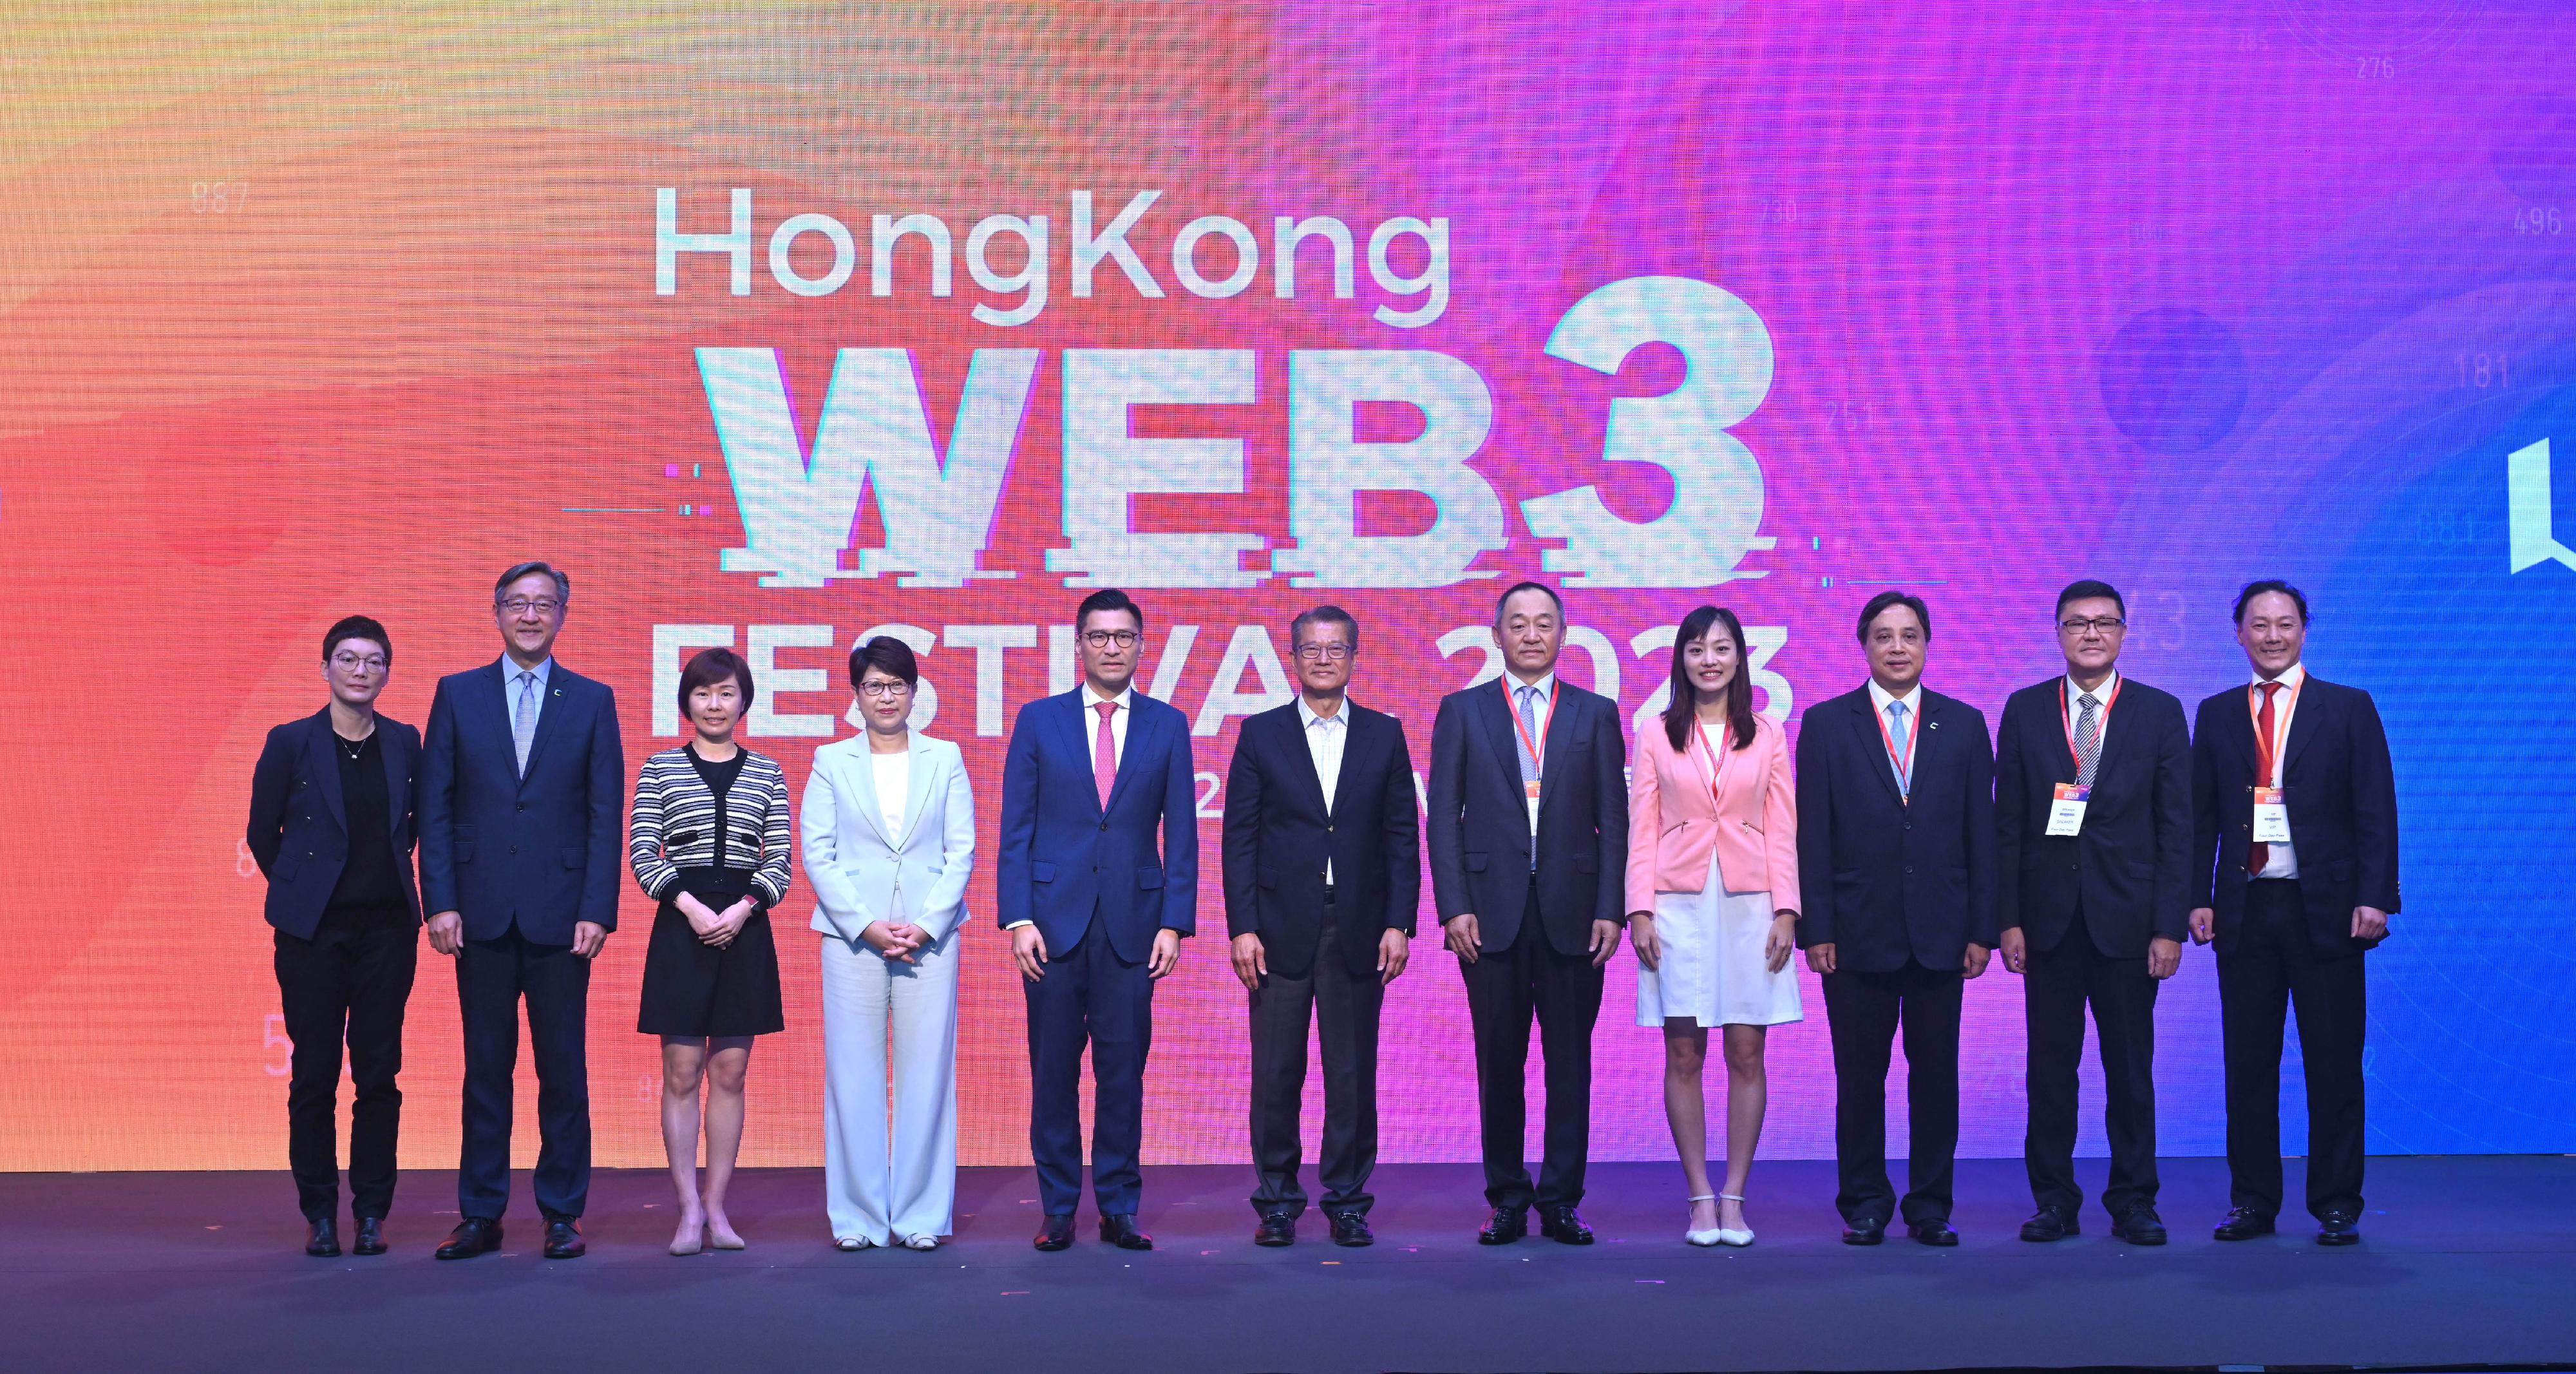 財政司司長陳茂波今日（四月十二日）出席2023香港Web3嘉年華開幕式。圖示（左五起）立法會議員（科技創新界）邱達根、陳茂波、萬向區塊鏈實驗室創始人及HashKey Group董事長肖風博士和其他嘉賓合照。